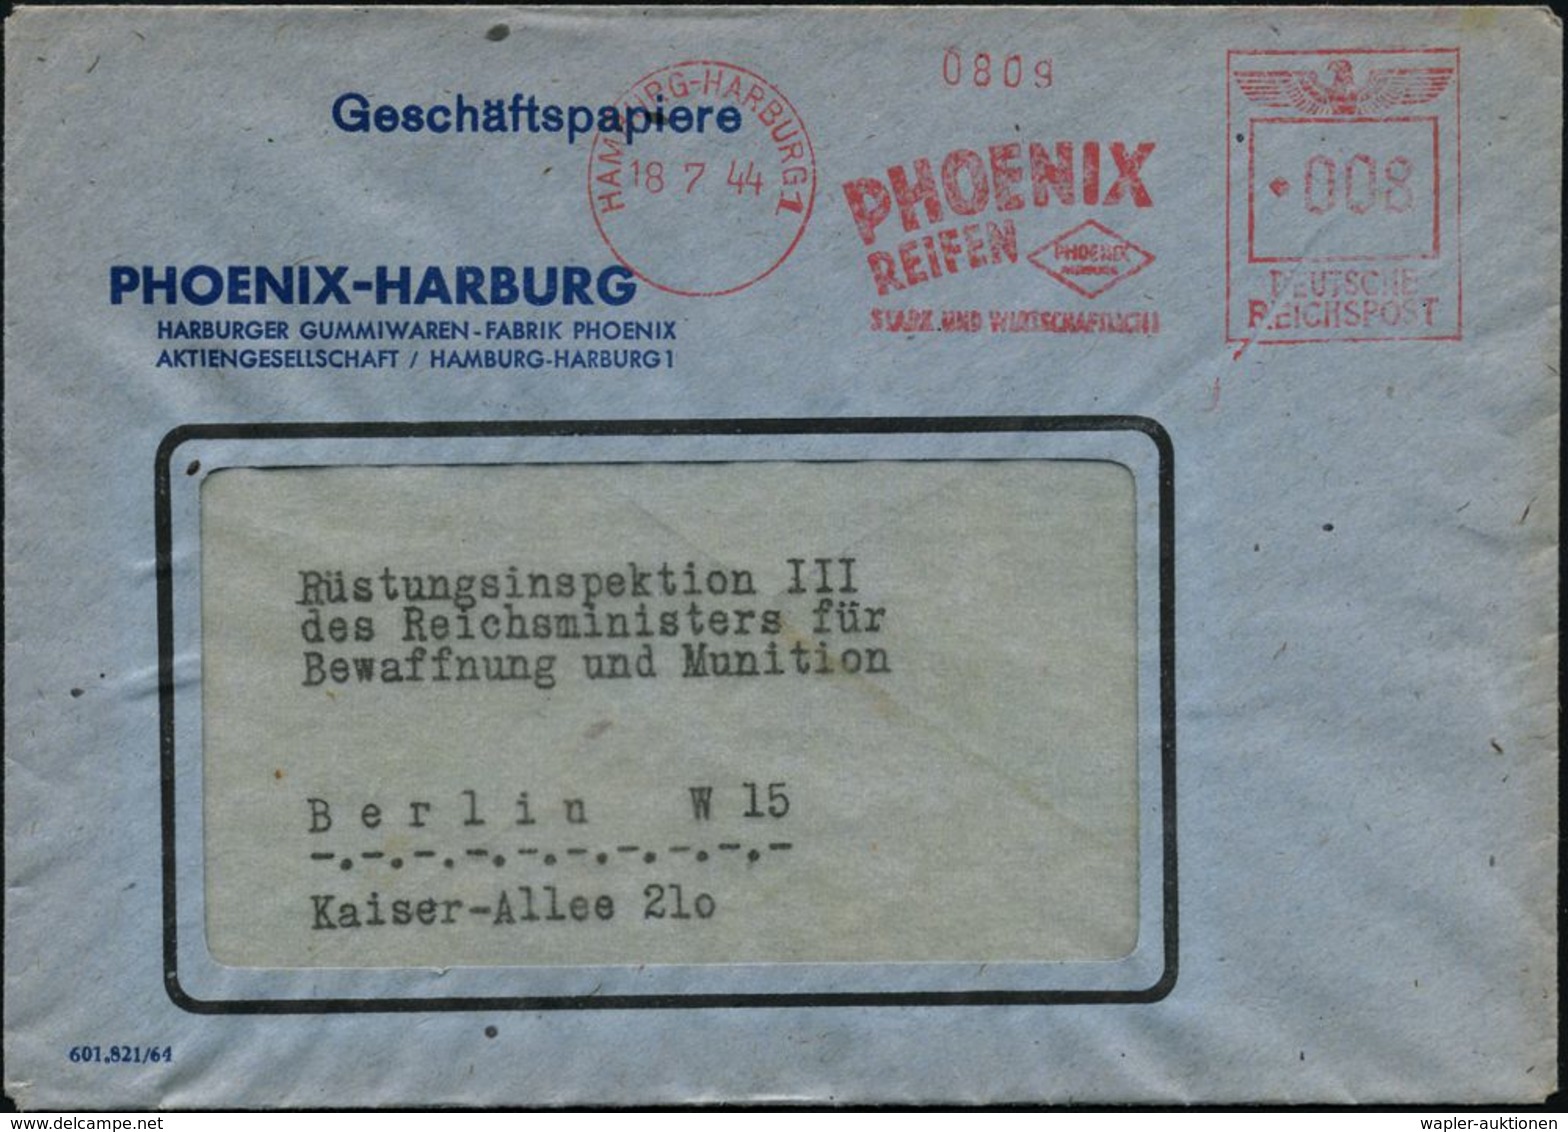 GUMMI / KAUTSCHUK : HAMBURG-HARBURG 1/ PHOENIX/ REIFEN../ STARK U.WIRTSCHAFTLICH 1944 (18.7.) Seltener AFS-Typ "Reichsad - Chemistry